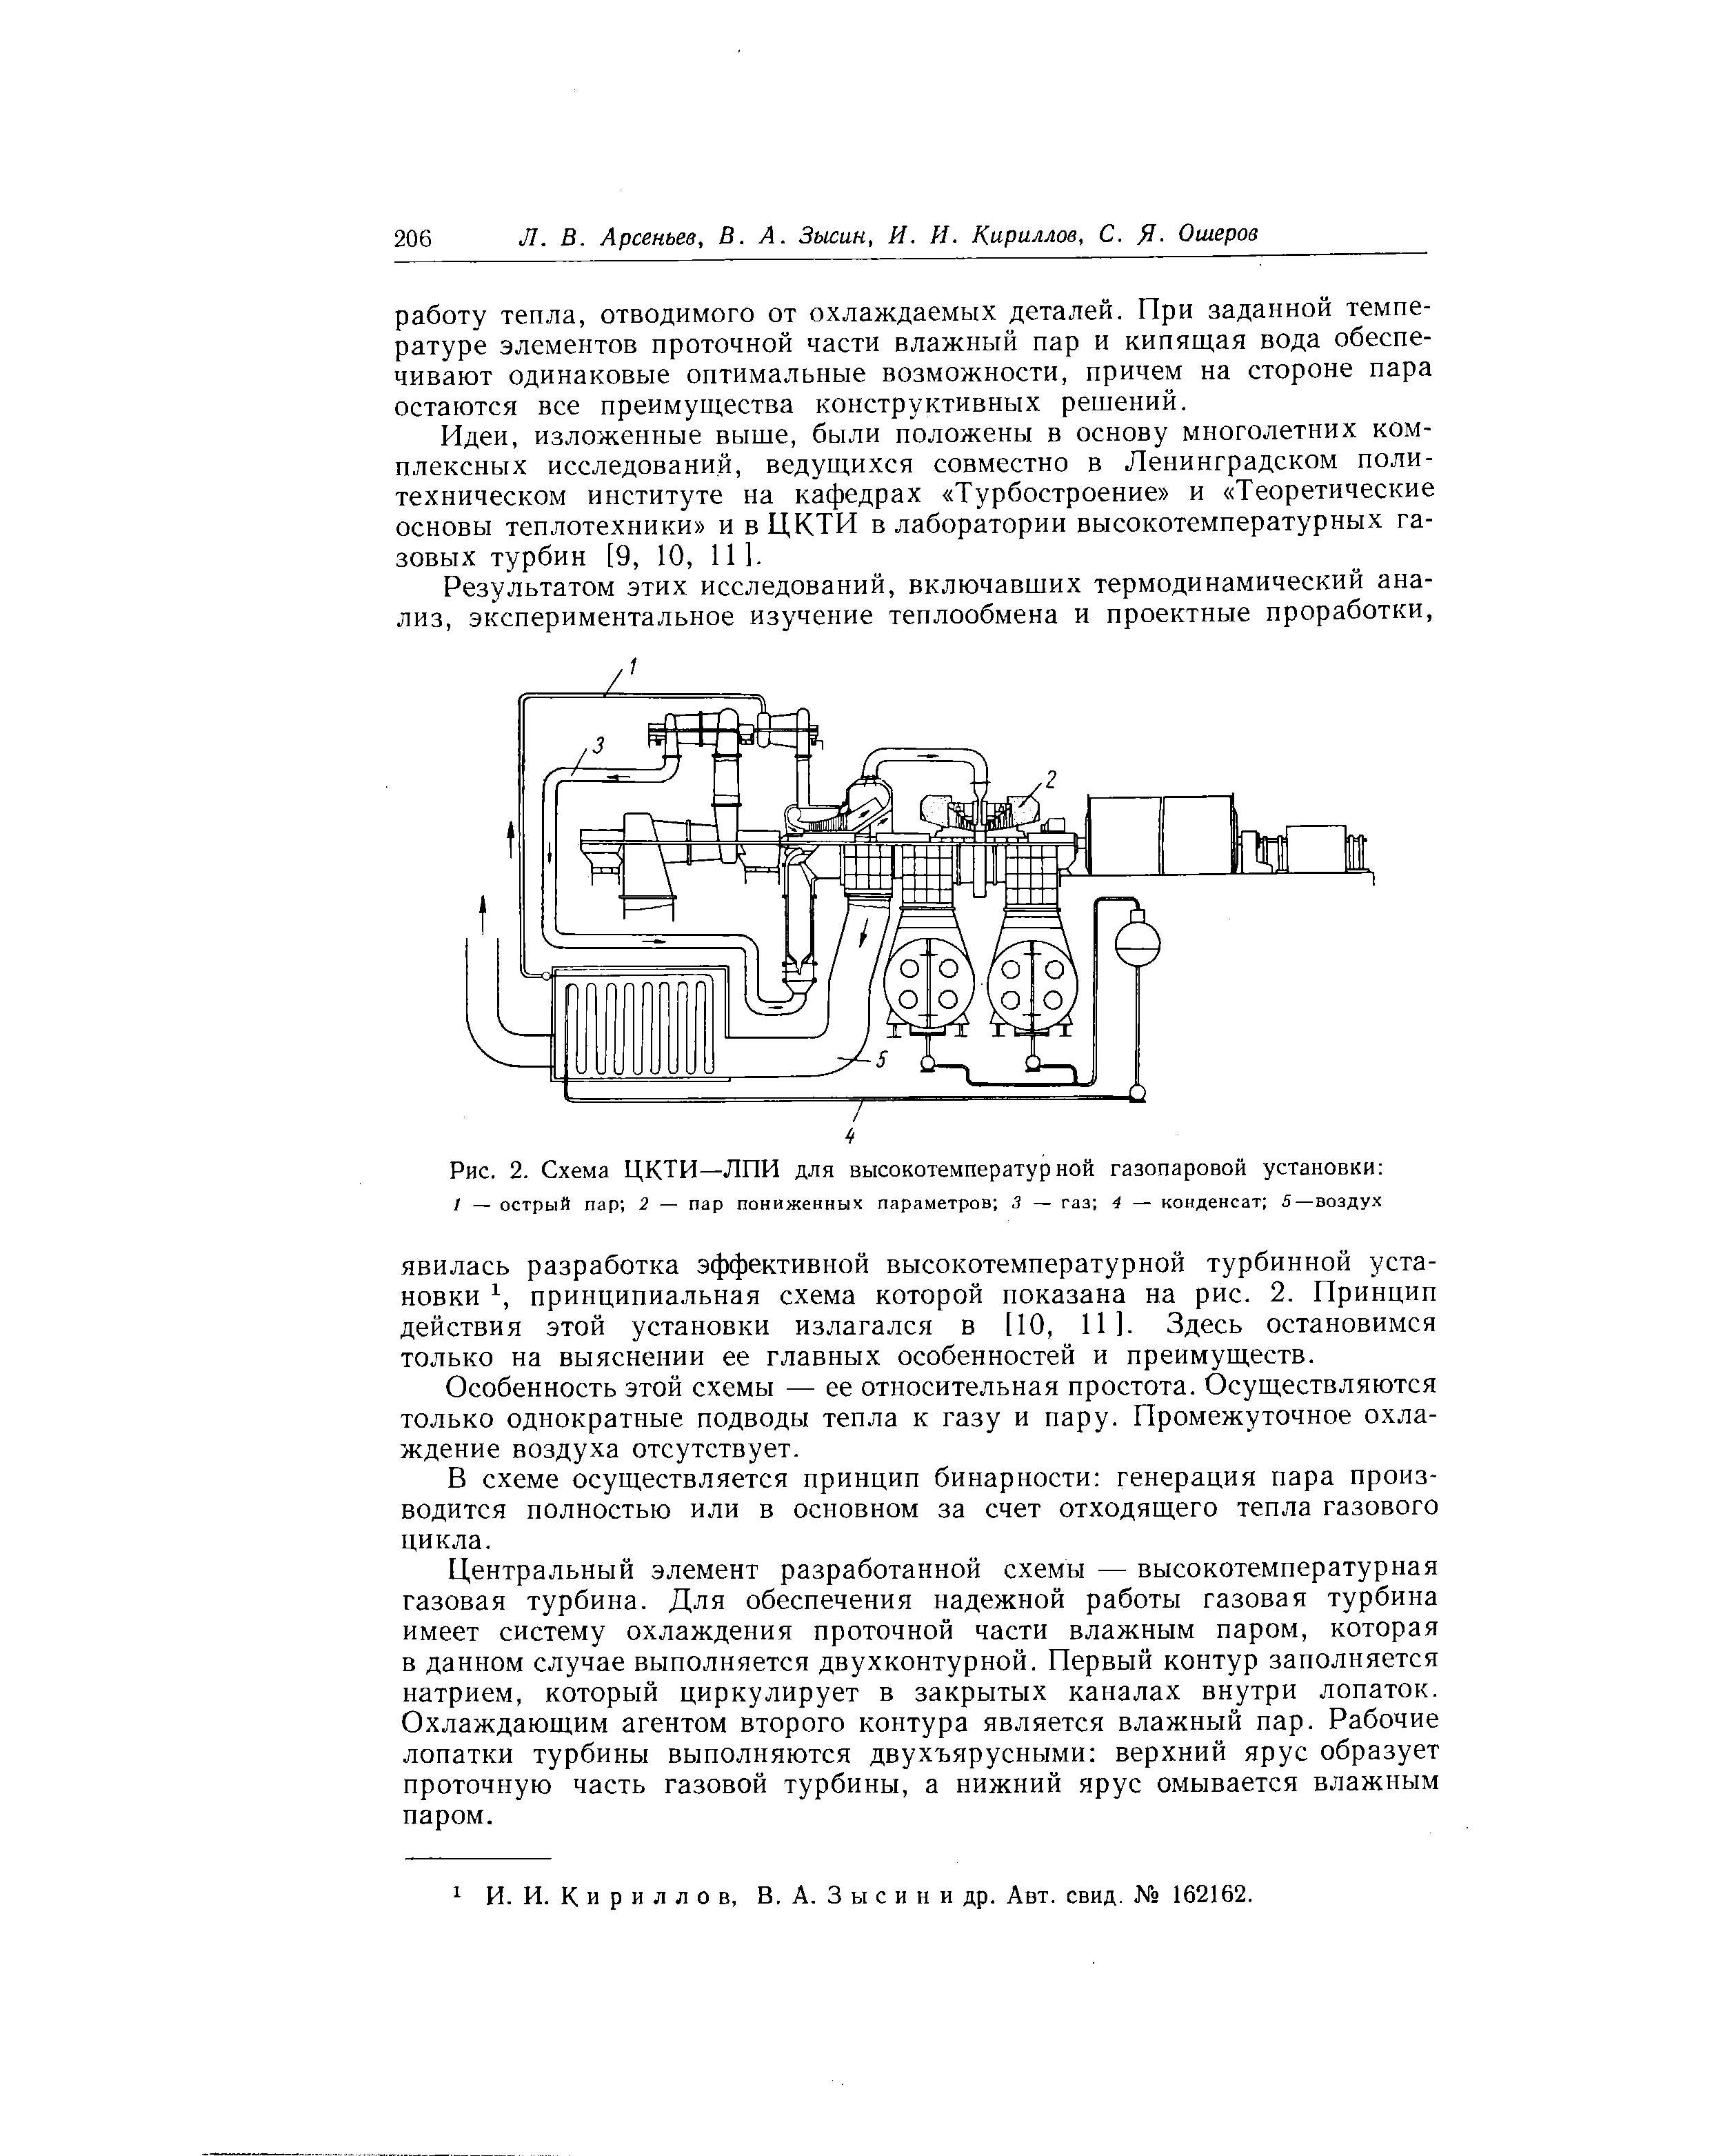 Рис. 2. Схема ЦКТИ—ЛПИ для высокотемпературной газопаровой установки 
